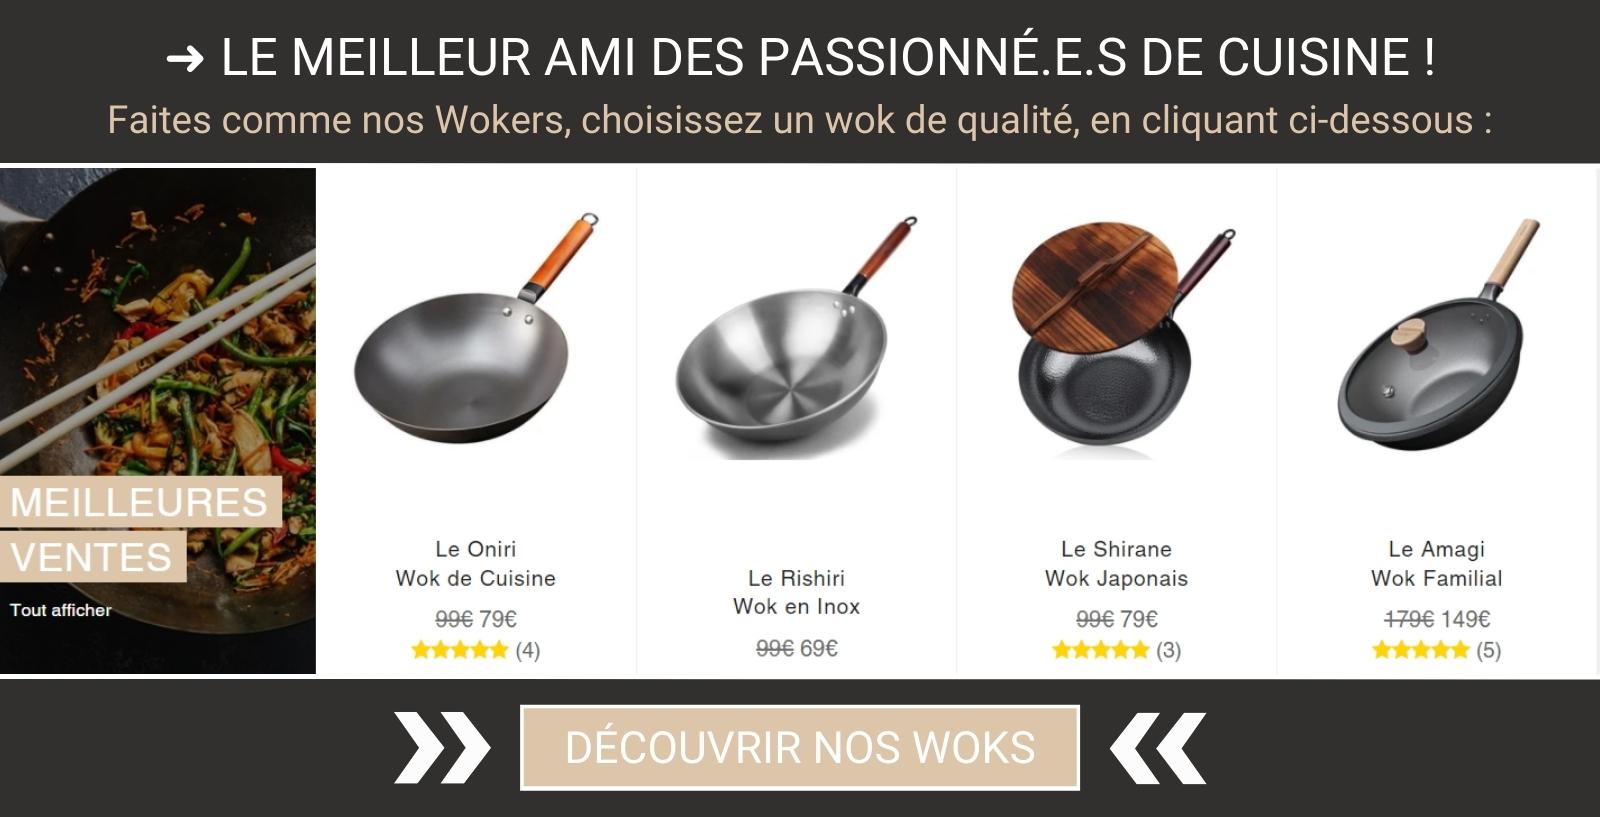 Retrouvez notre selection de woks